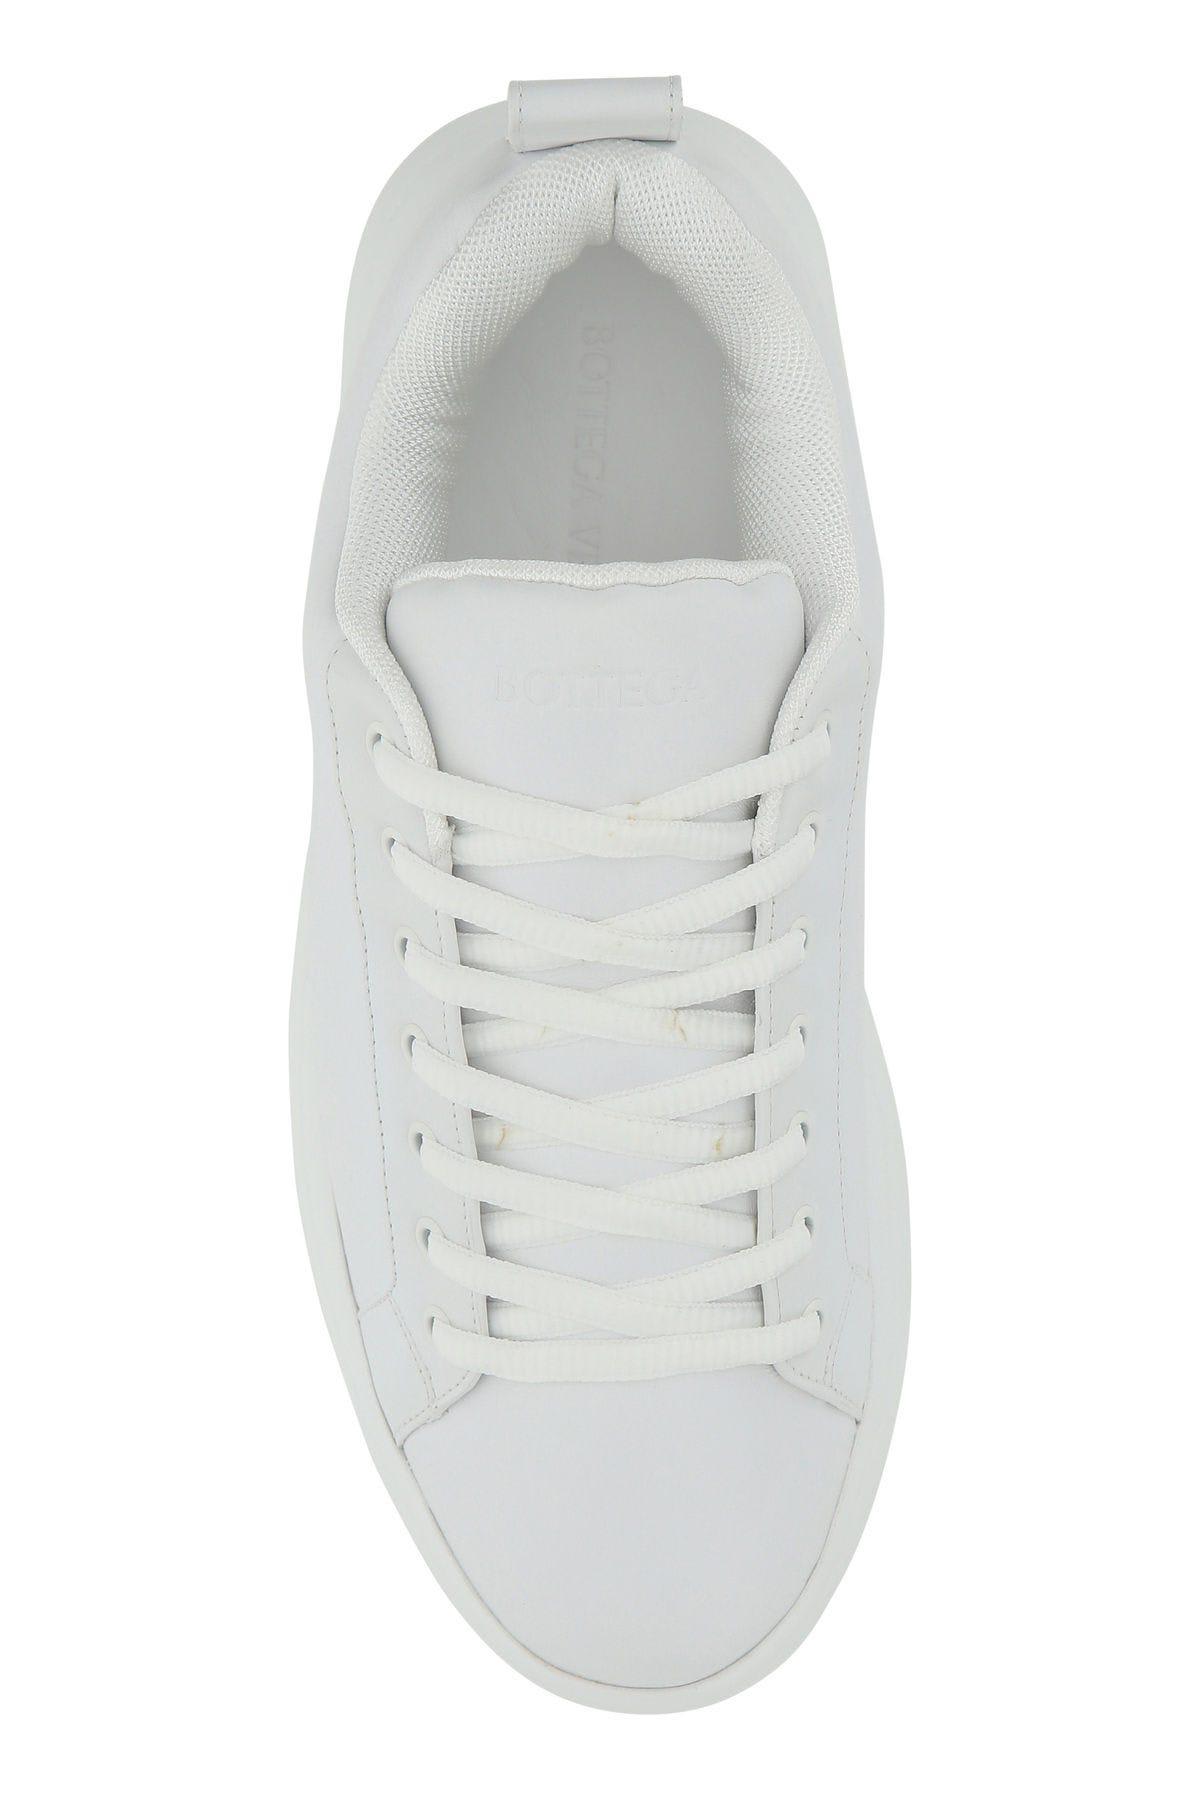 Shop Bottega Veneta White Leather Tennis Sneakers